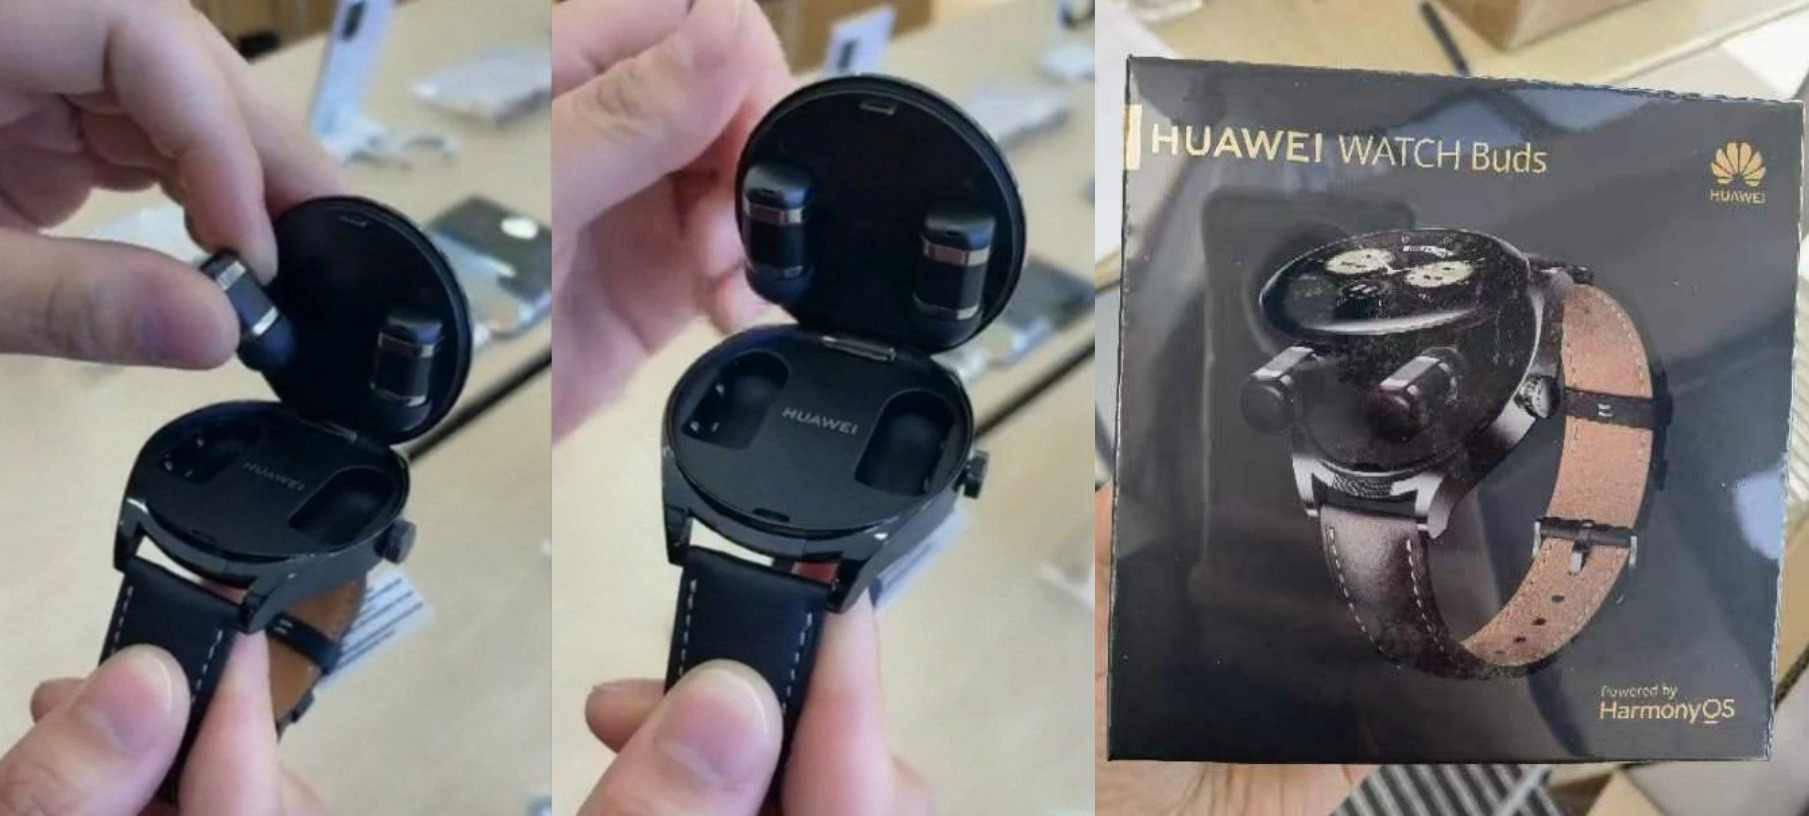 Таким буде Huawei Watch Buds - дивний смарт-годинник із захованими всередині корпусу навушниками